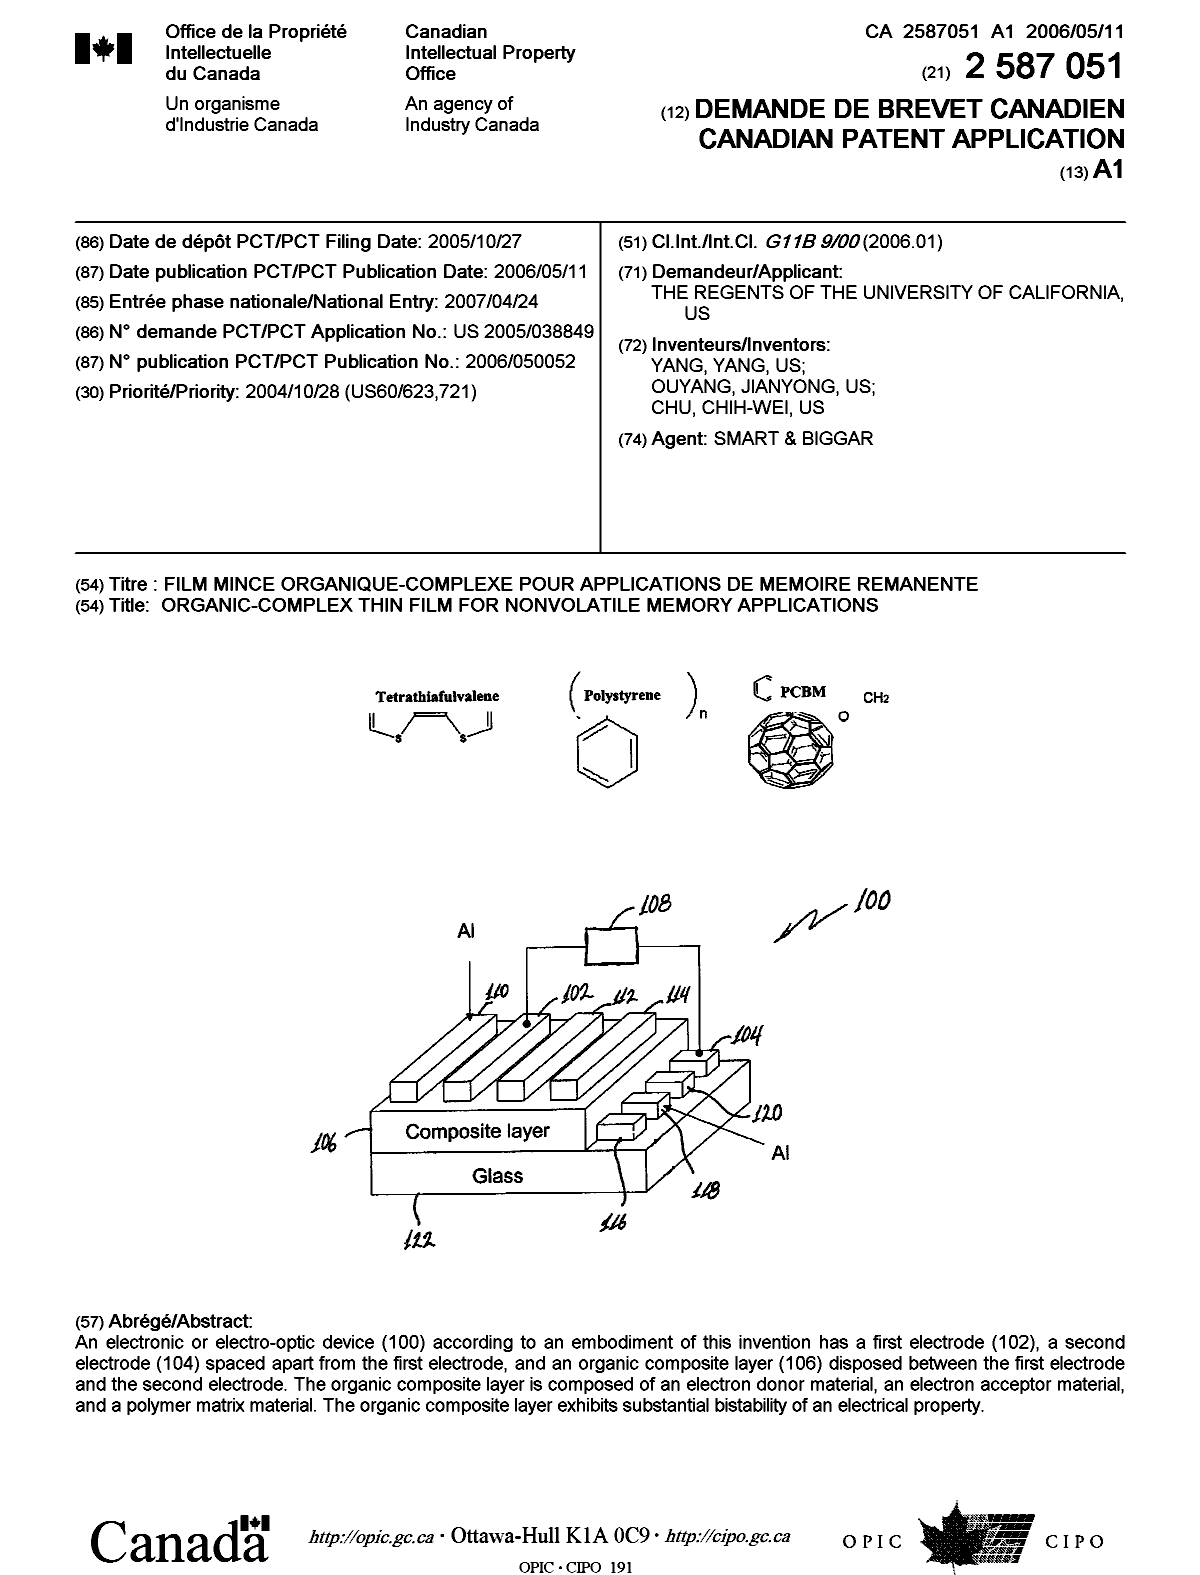 Document de brevet canadien 2587051. Page couverture 20070709. Image 1 de 1